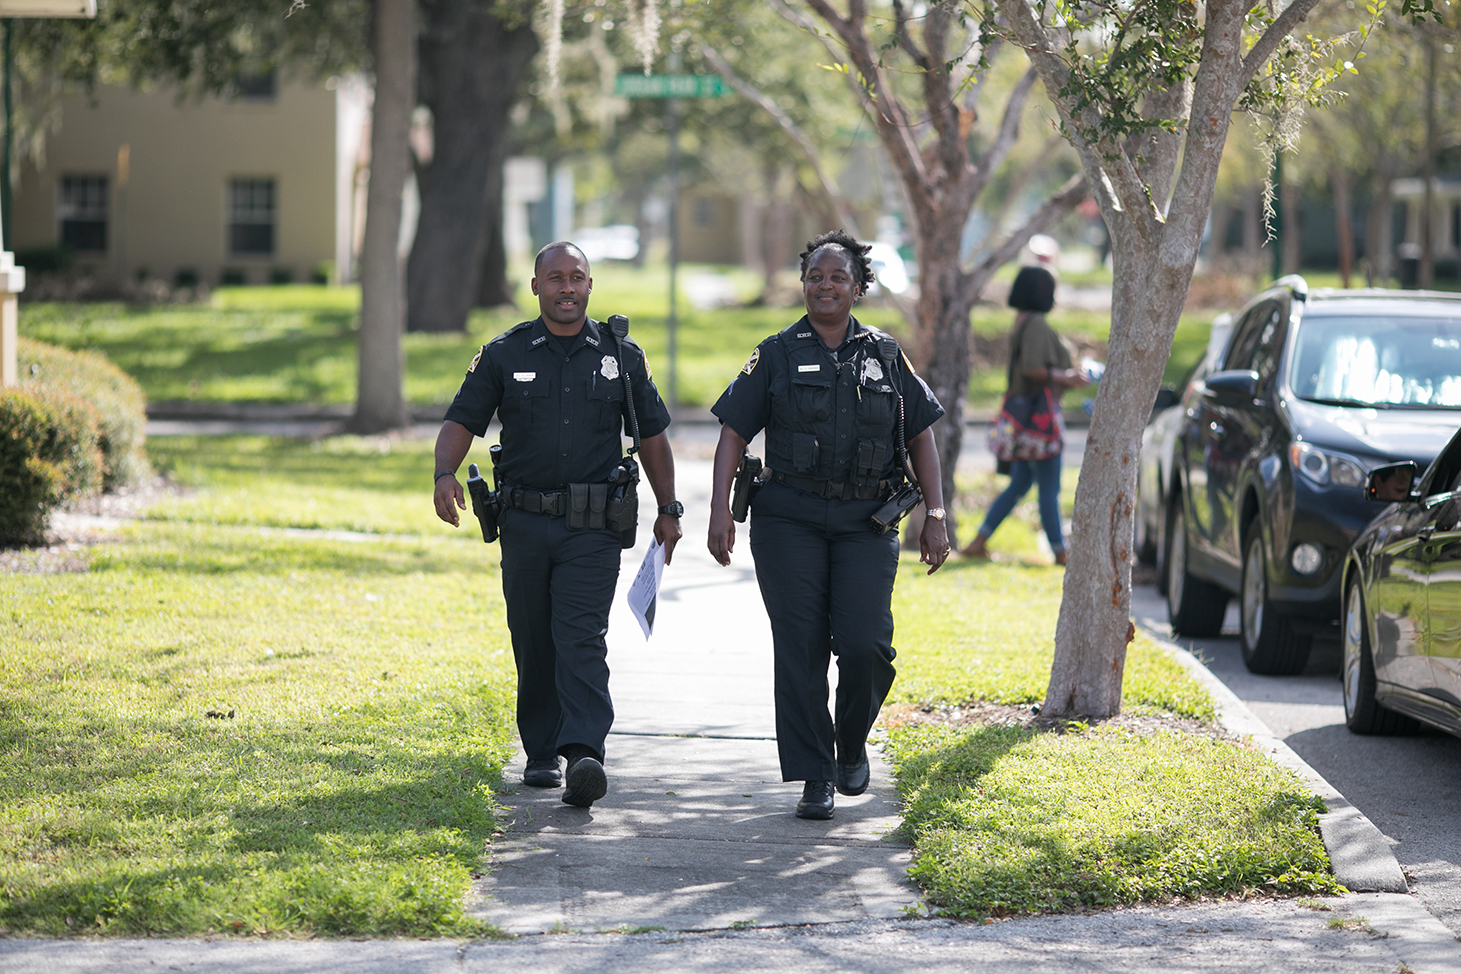 Officers walking neighborhood